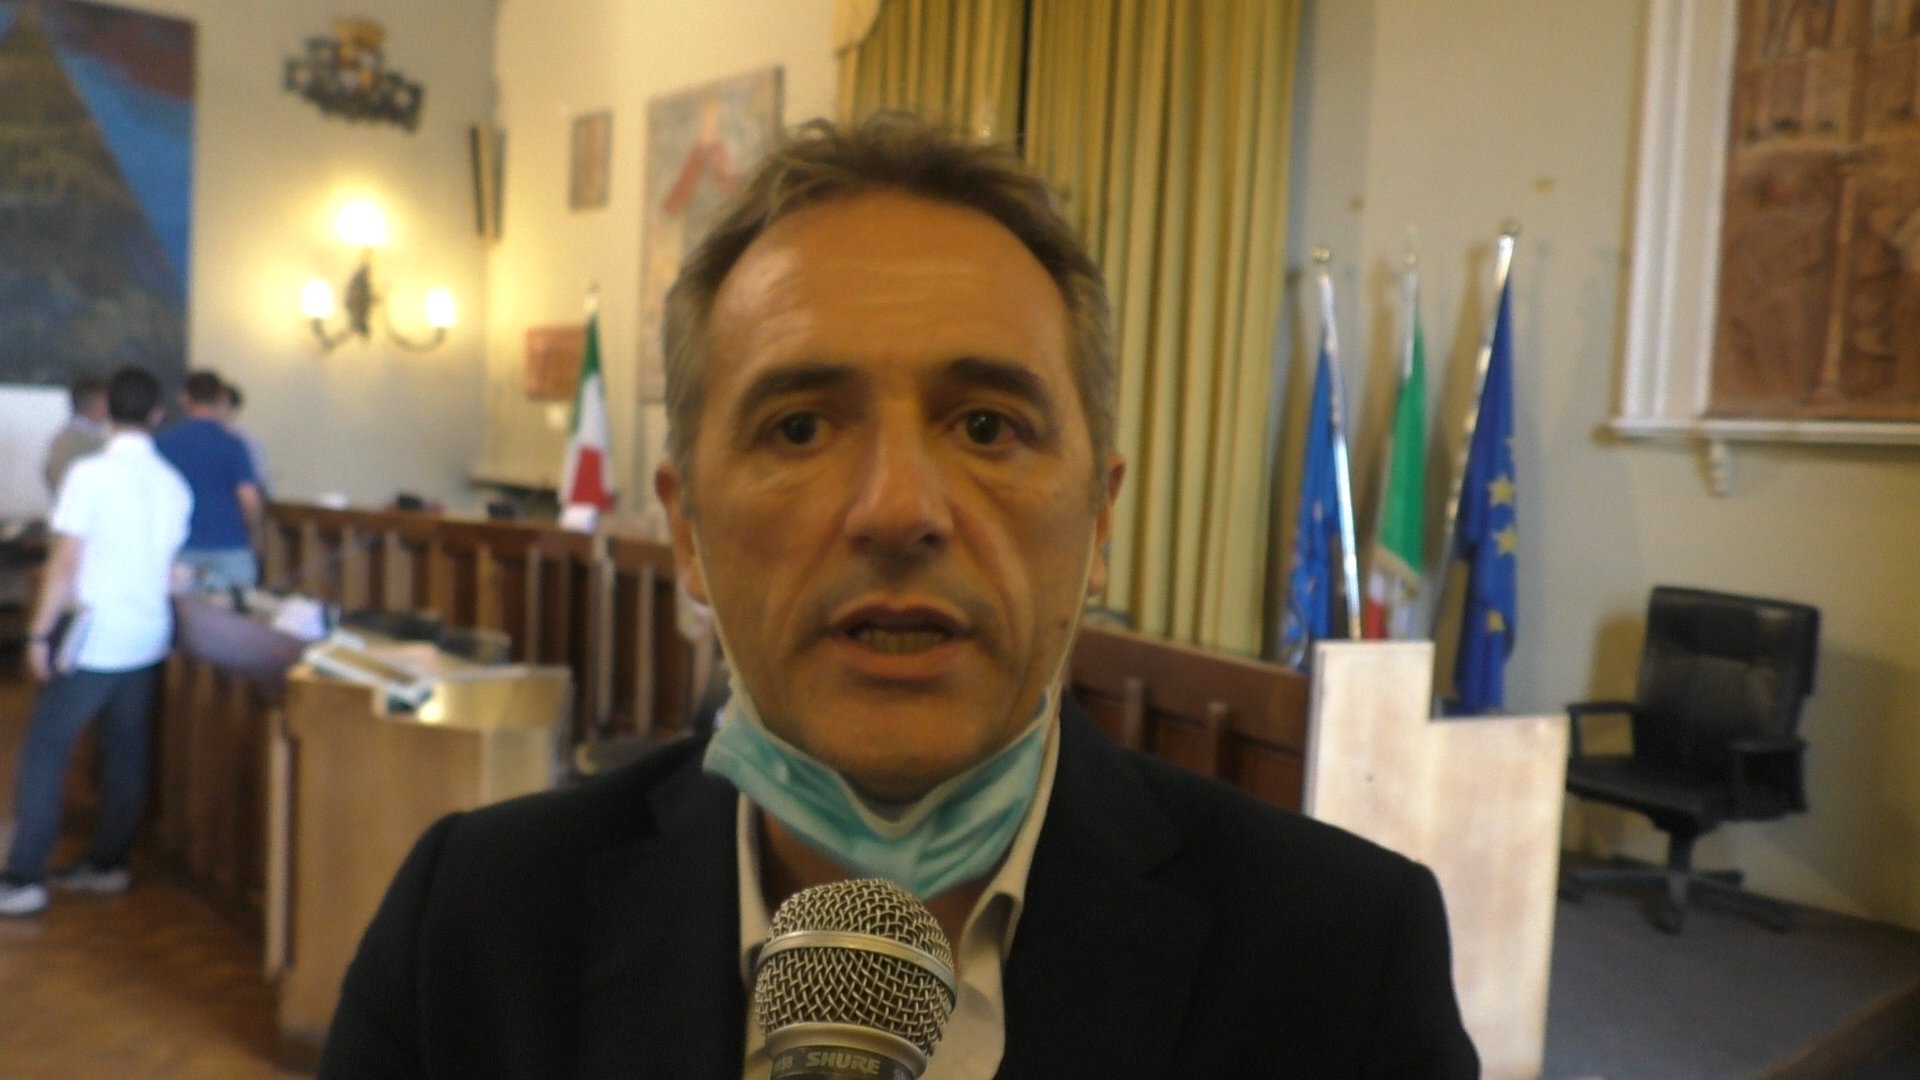 Calcio, delegato provinciale Dilettanti: “Finora nessuna defezione tra le squadre, dialogherò con tutti”